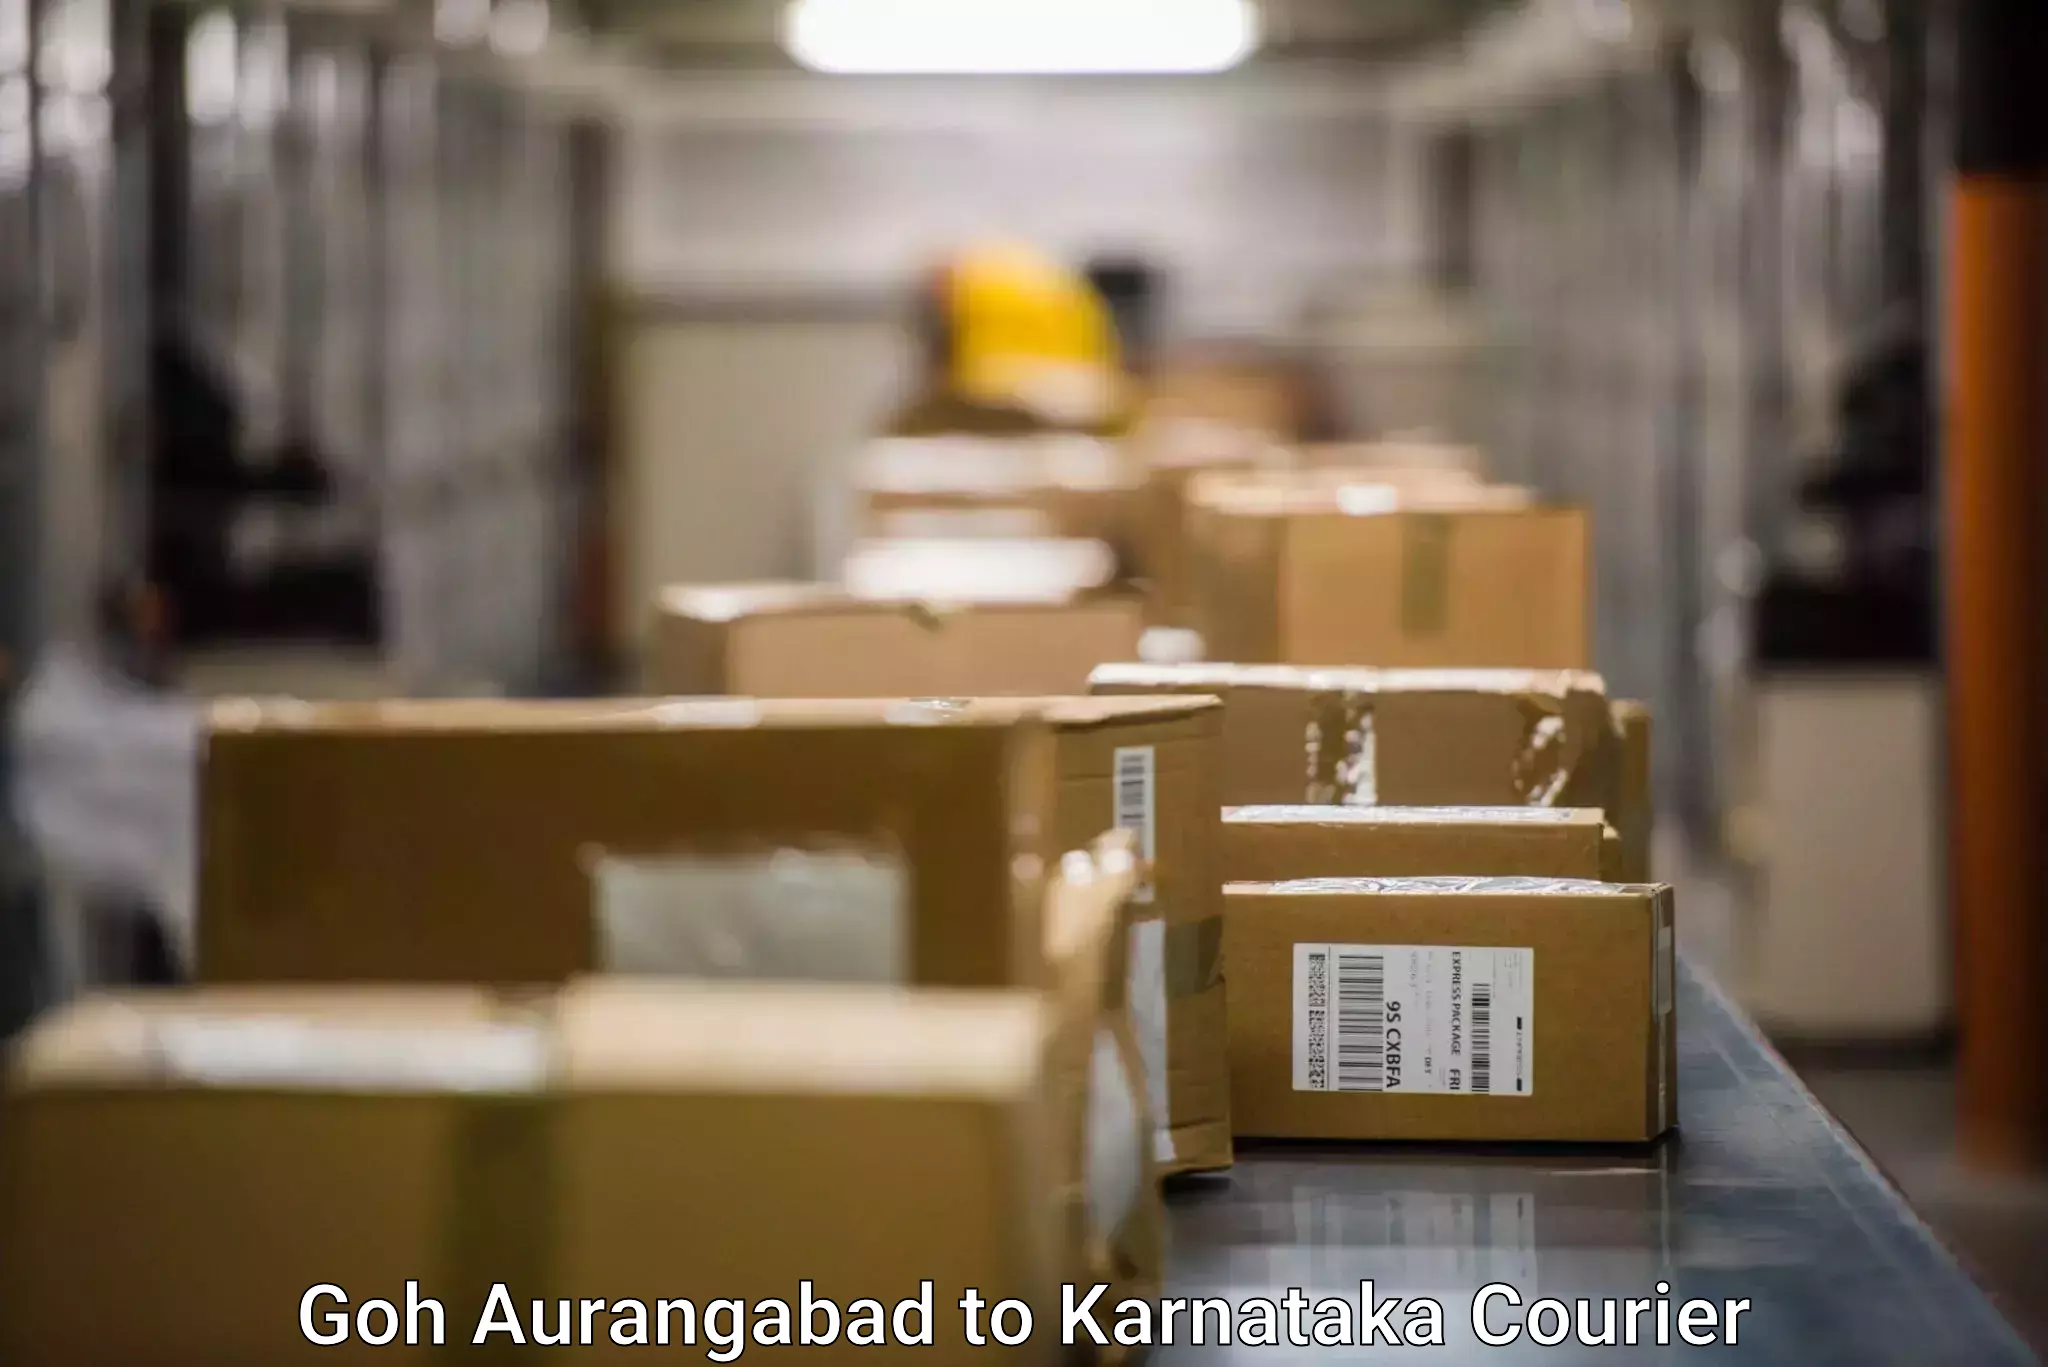 Premium delivery services Goh Aurangabad to Hulsoor